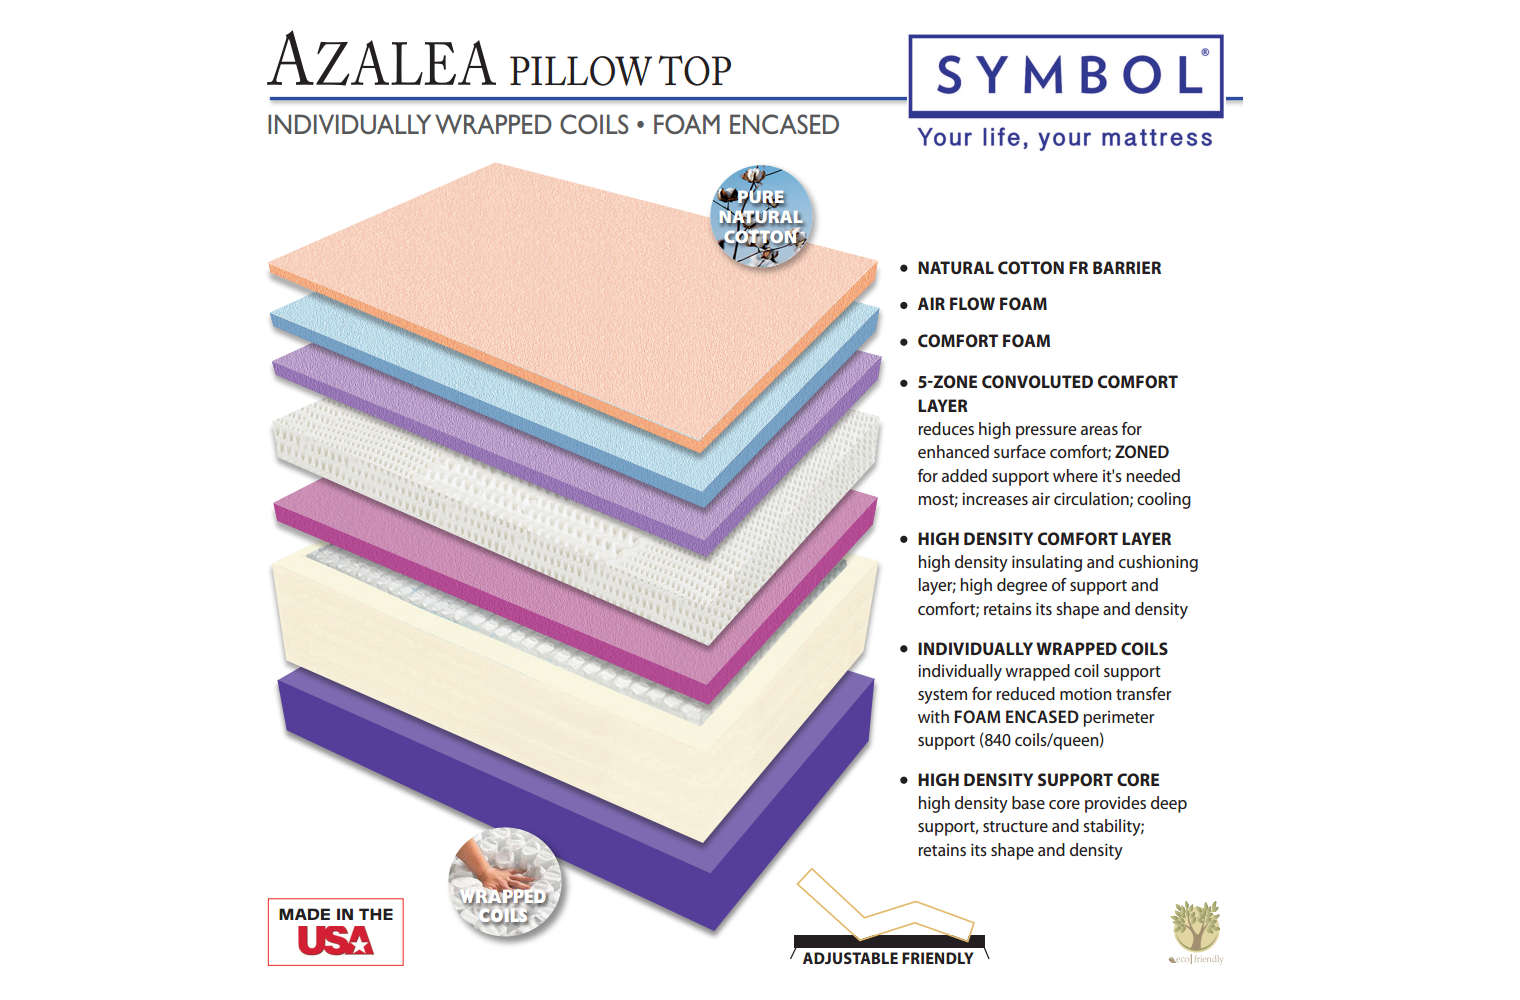 azalea pillow top mattress